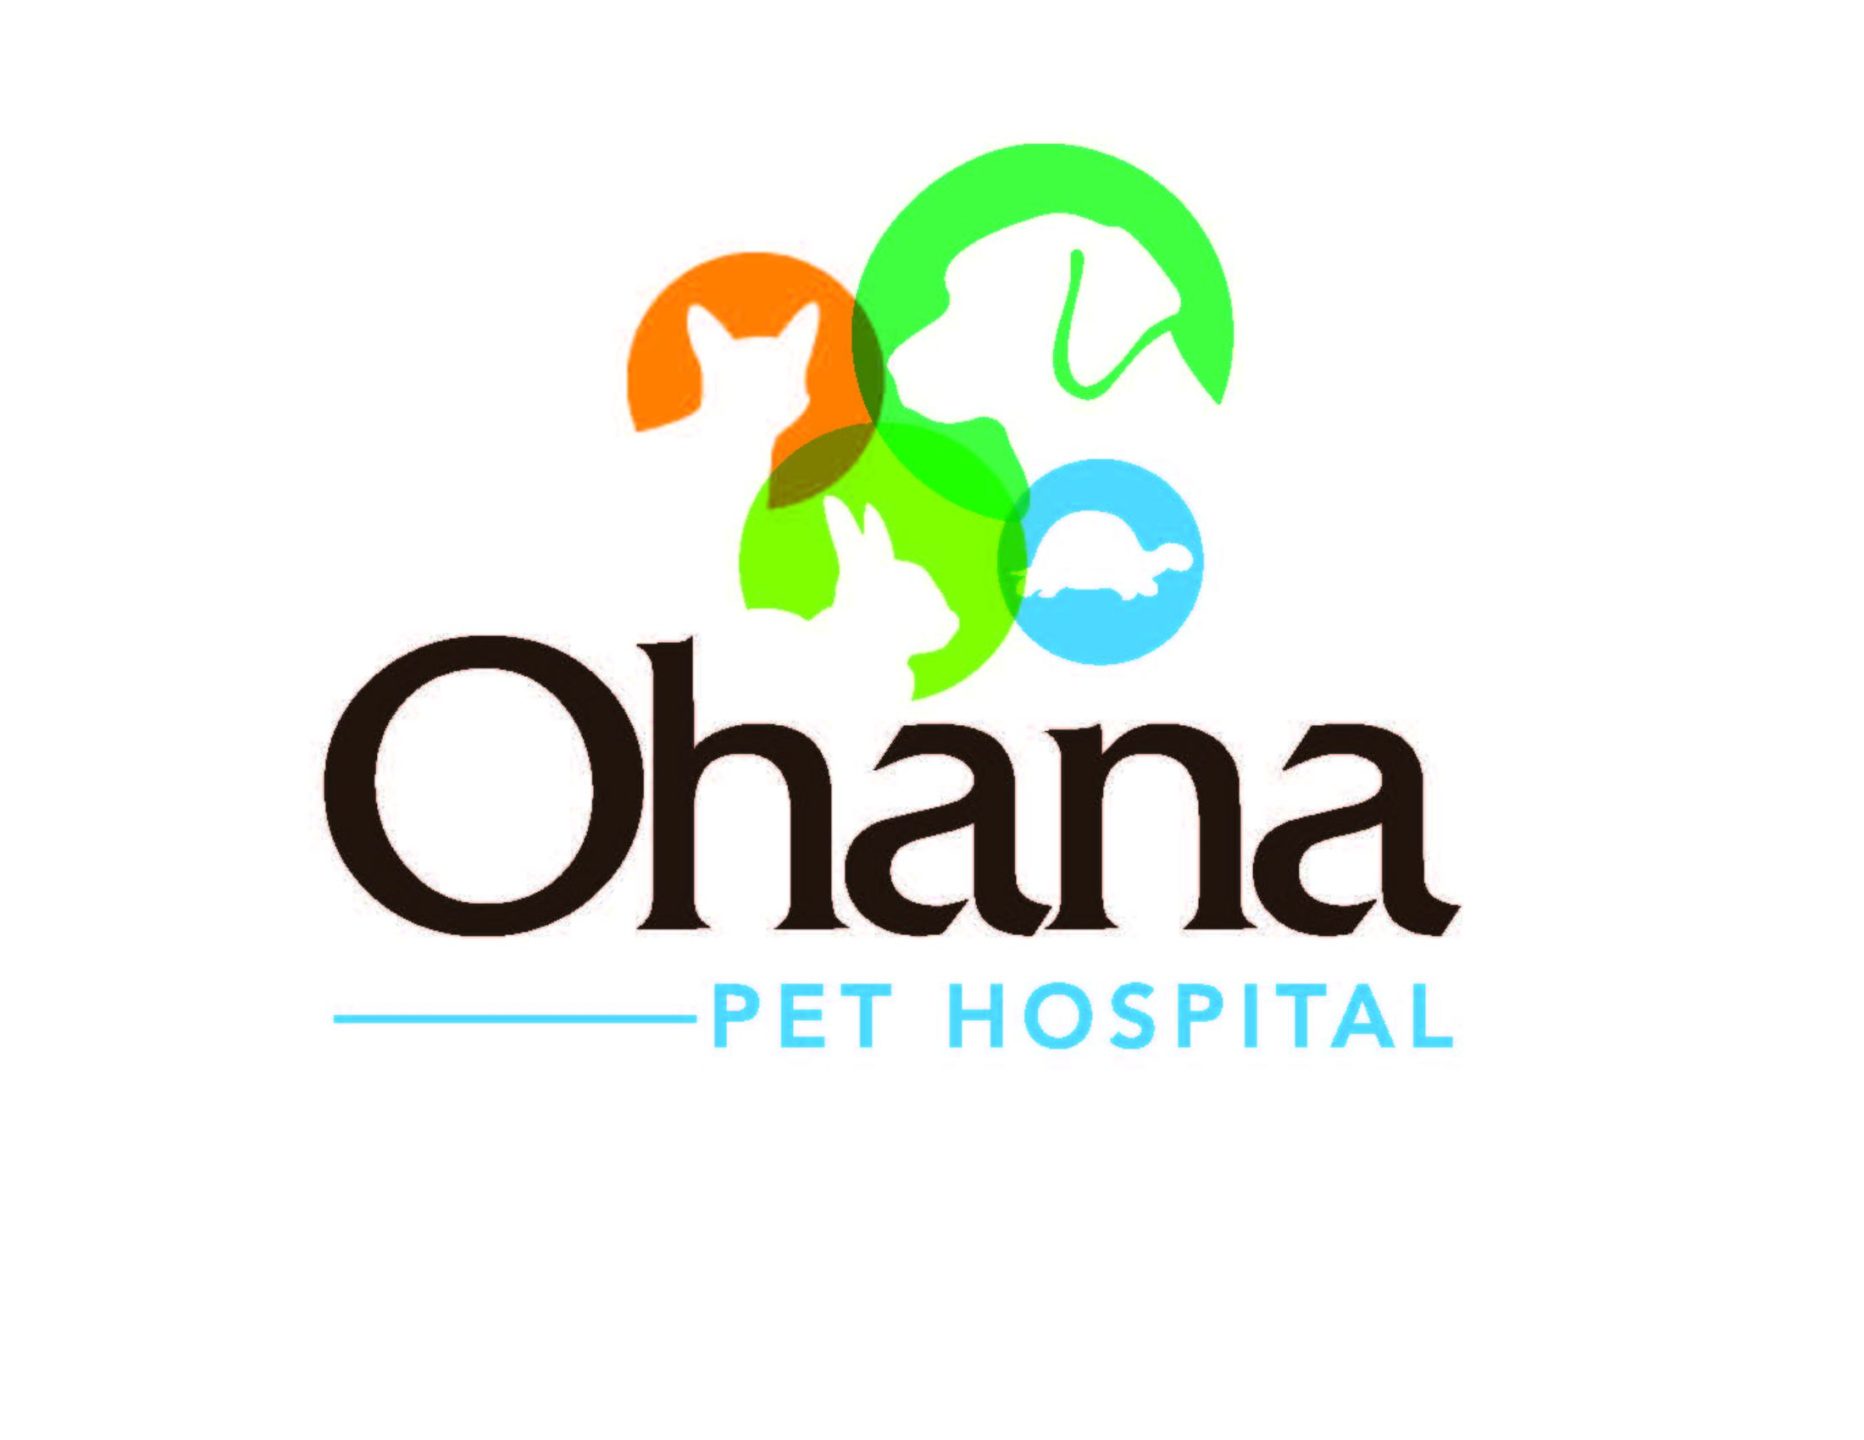 Ohana Logo